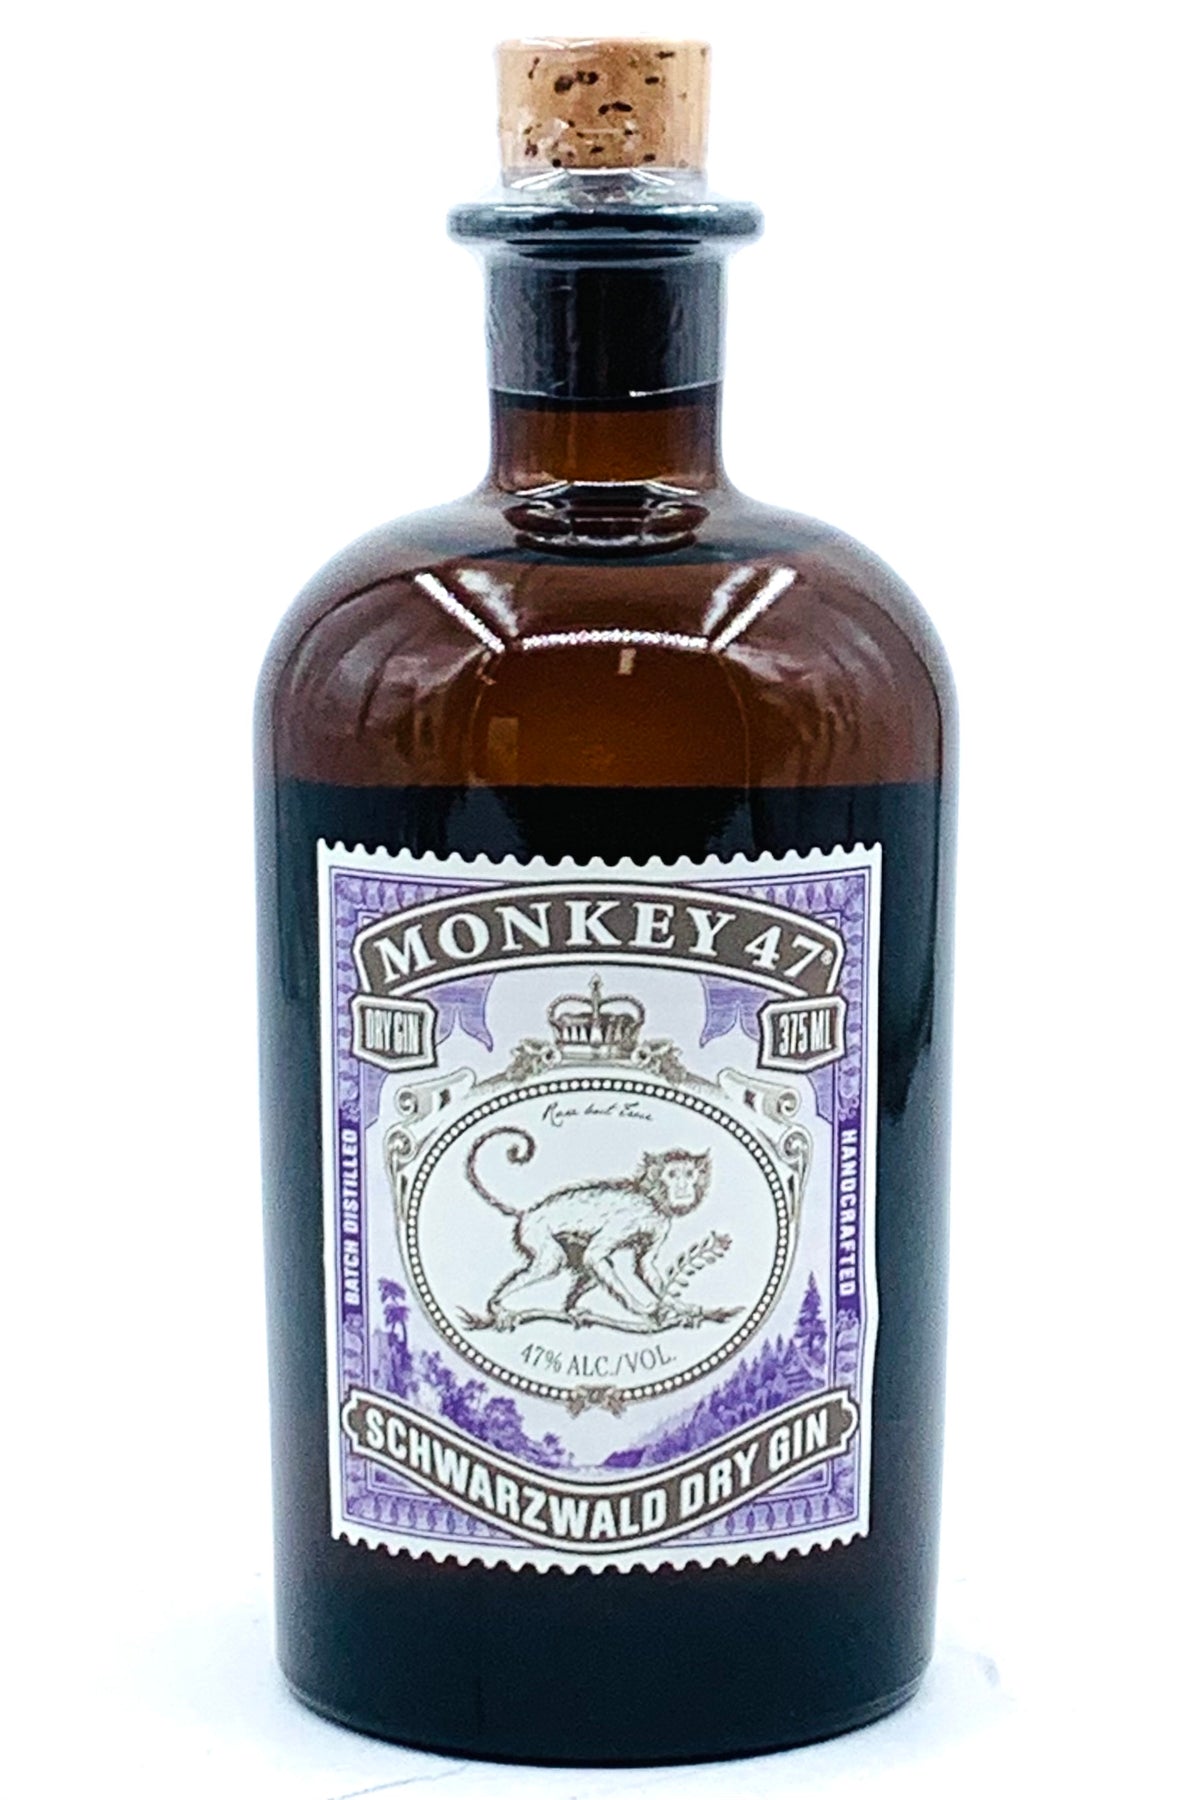 Monkey 47 Schwarzwald Dry Gin 375 ml